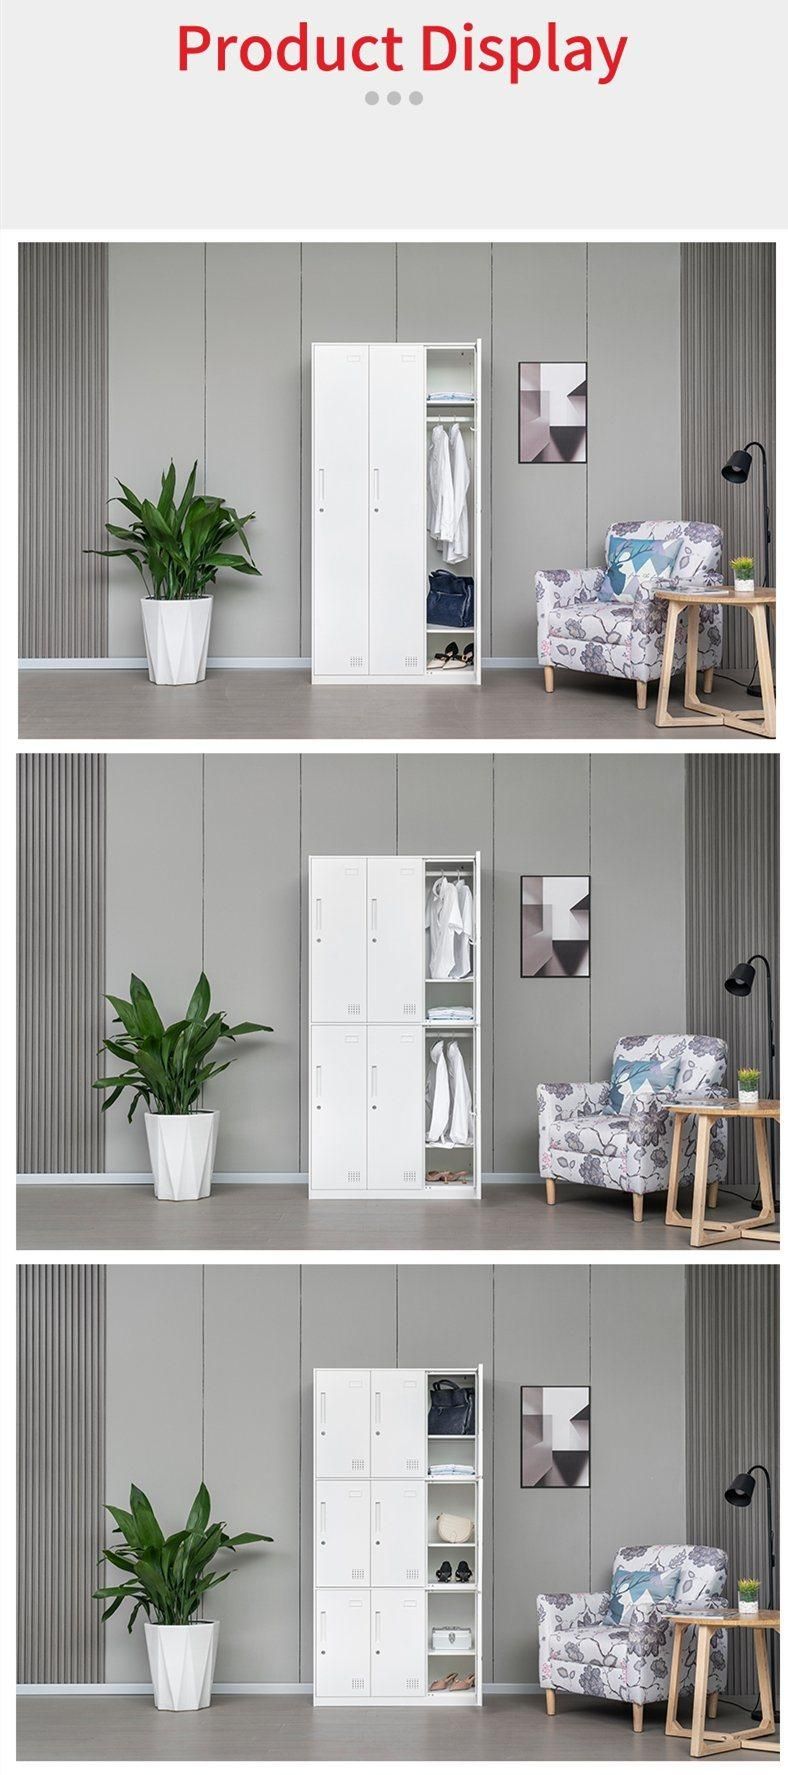 Modern Furniture 9 Mesh Door Storage Locker with Locker Feet